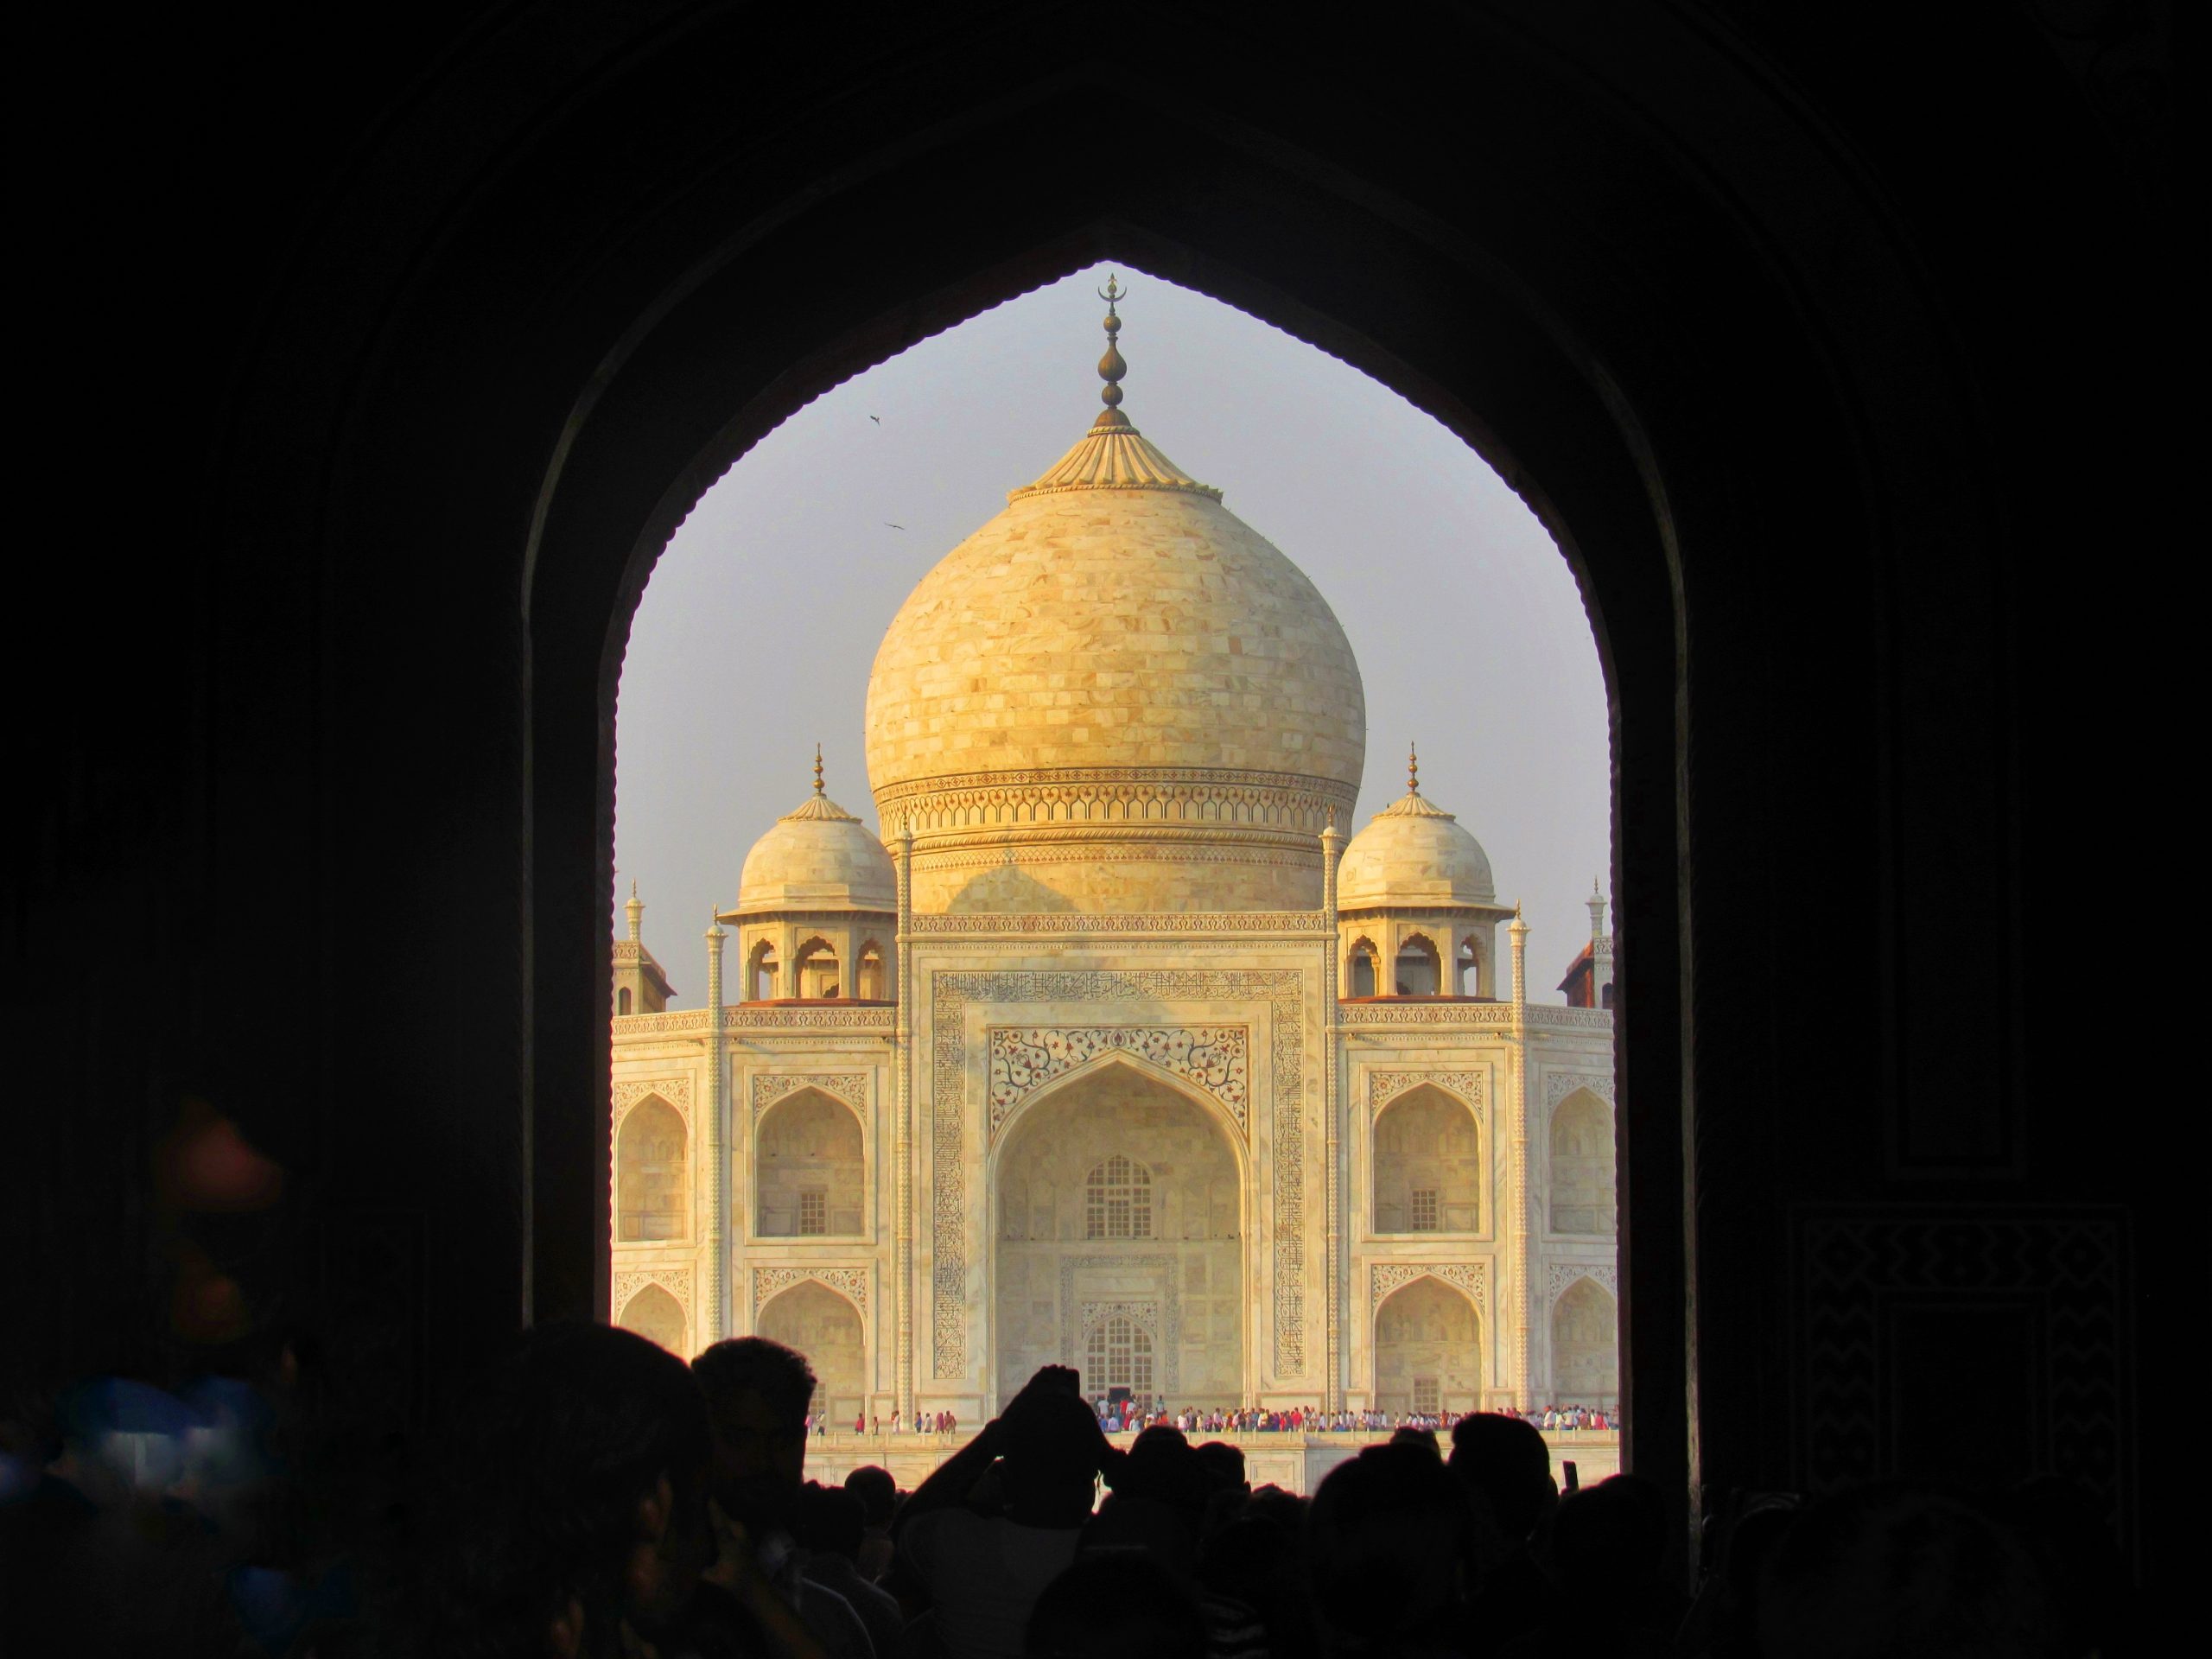 Taj Mahal view from inside